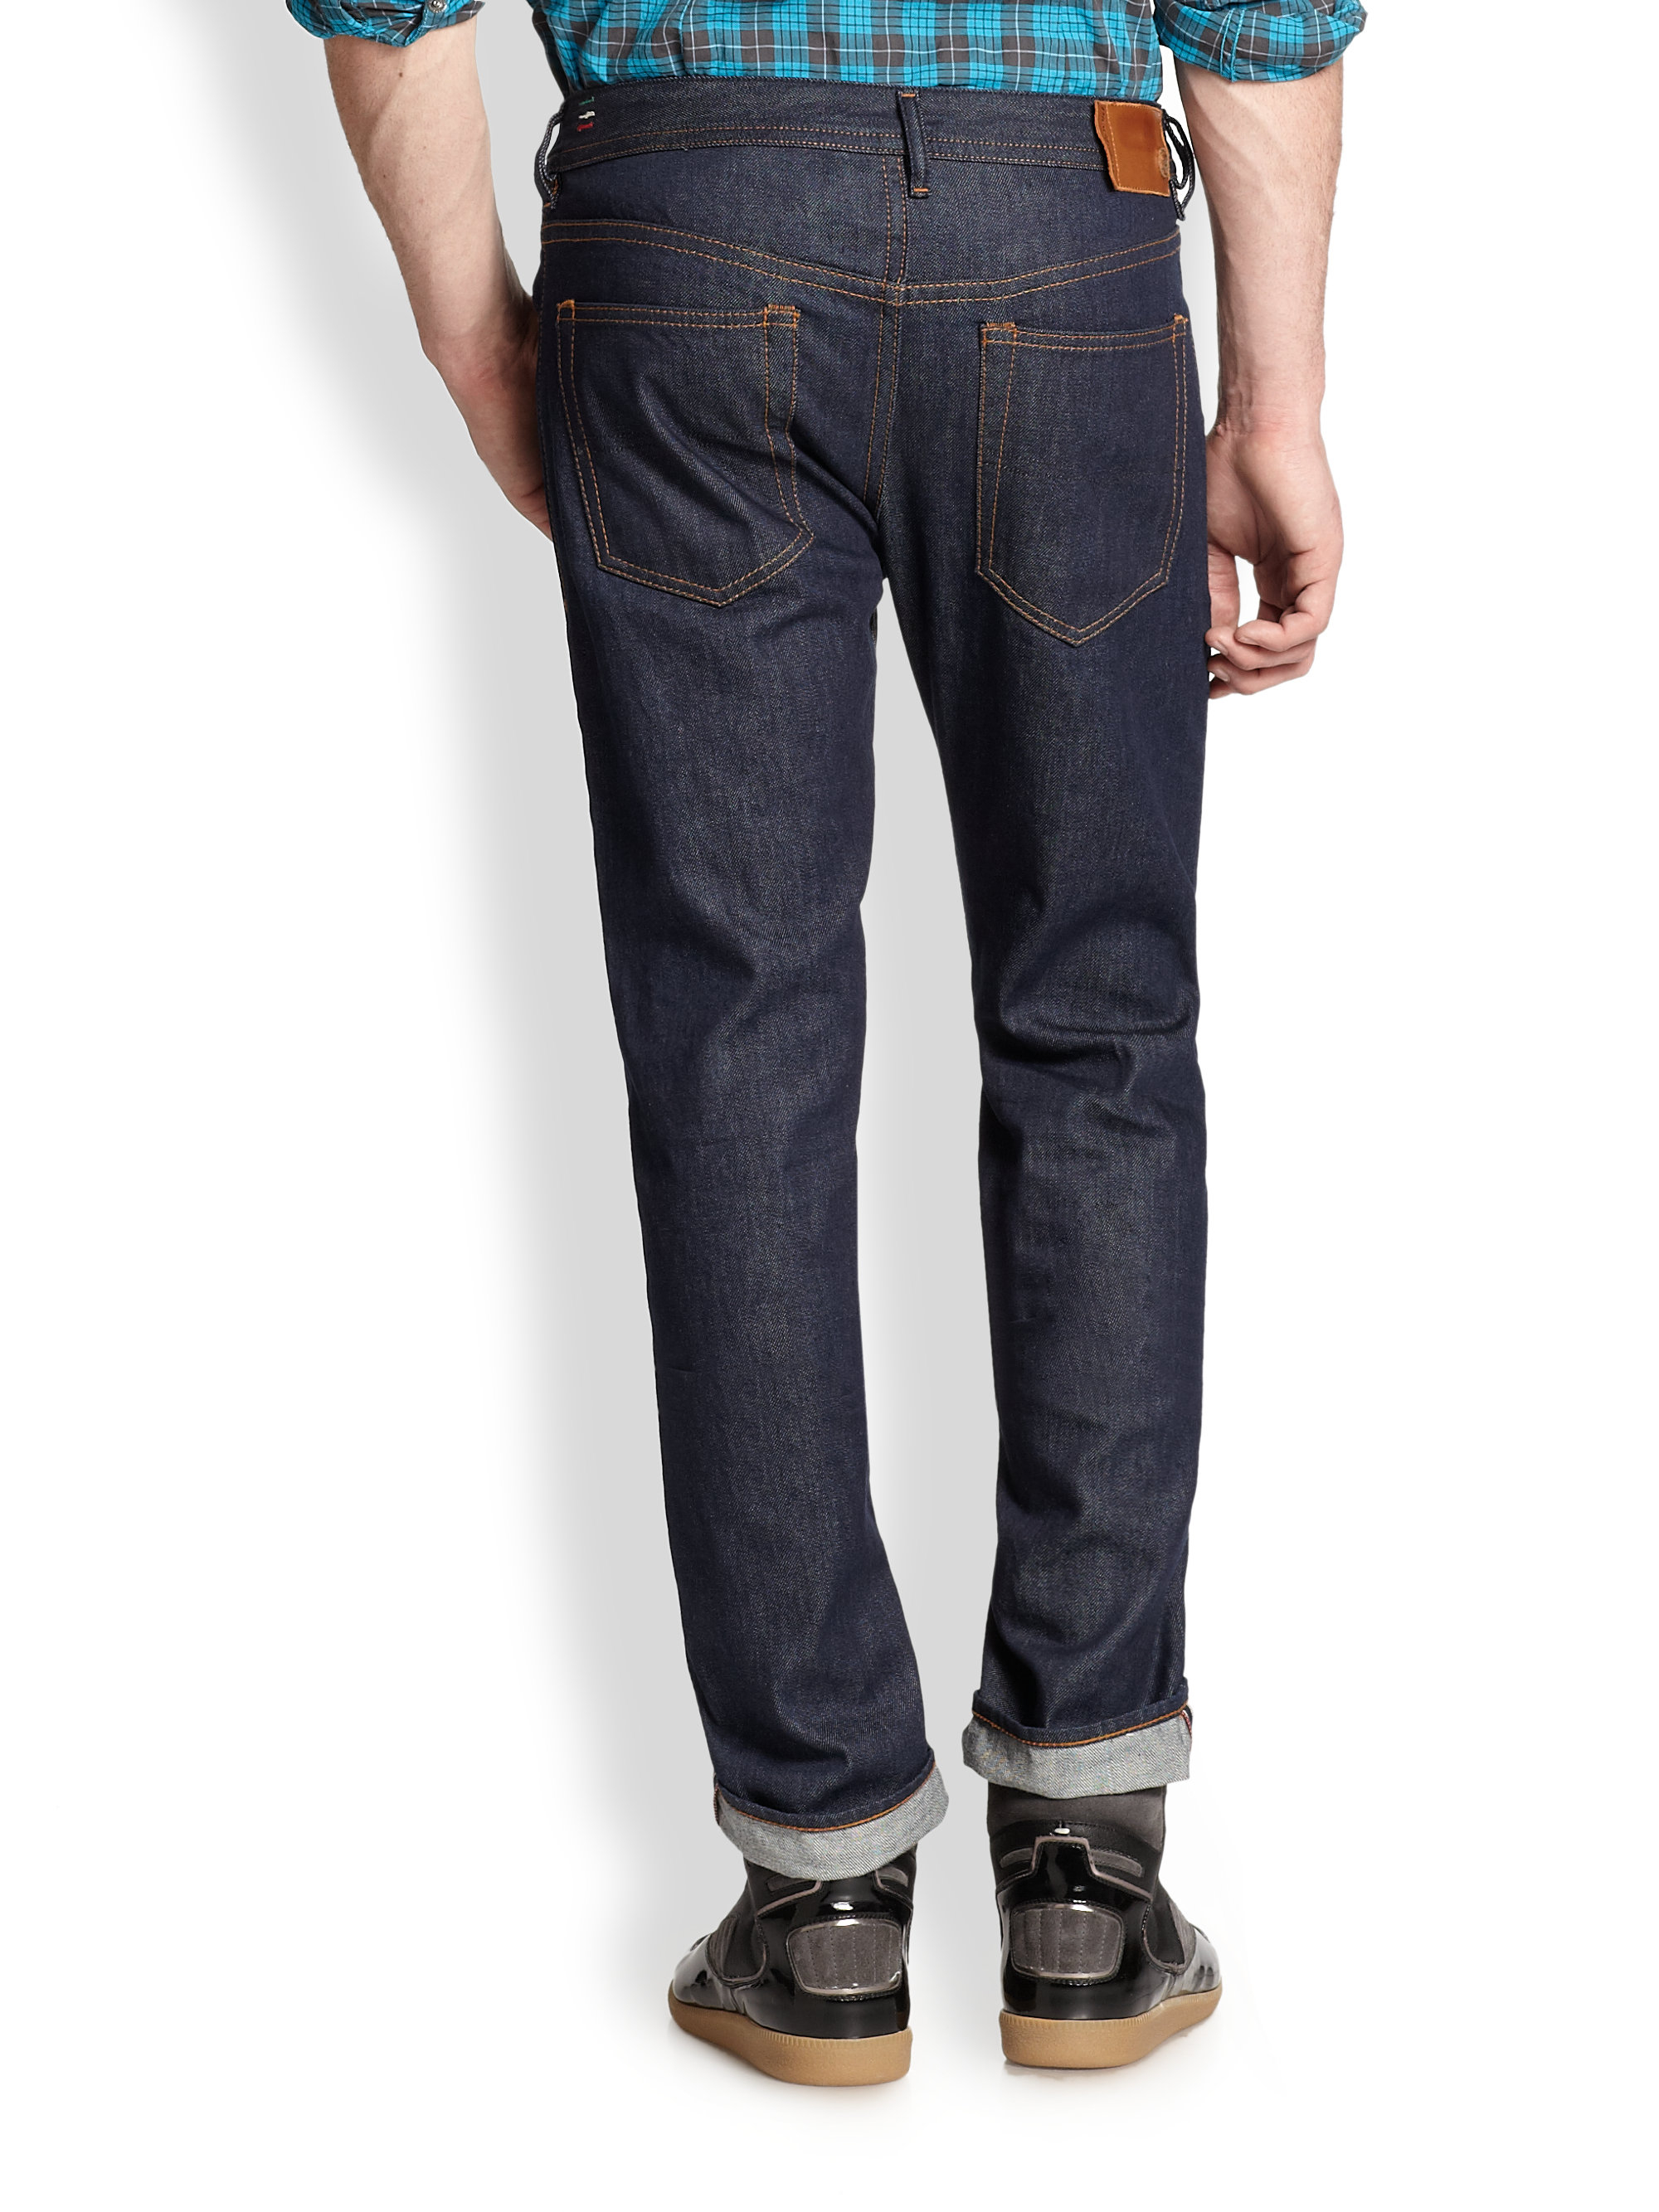 DIESEL Buster Selvedge Jeans in Denim (Blue) for Men - Lyst